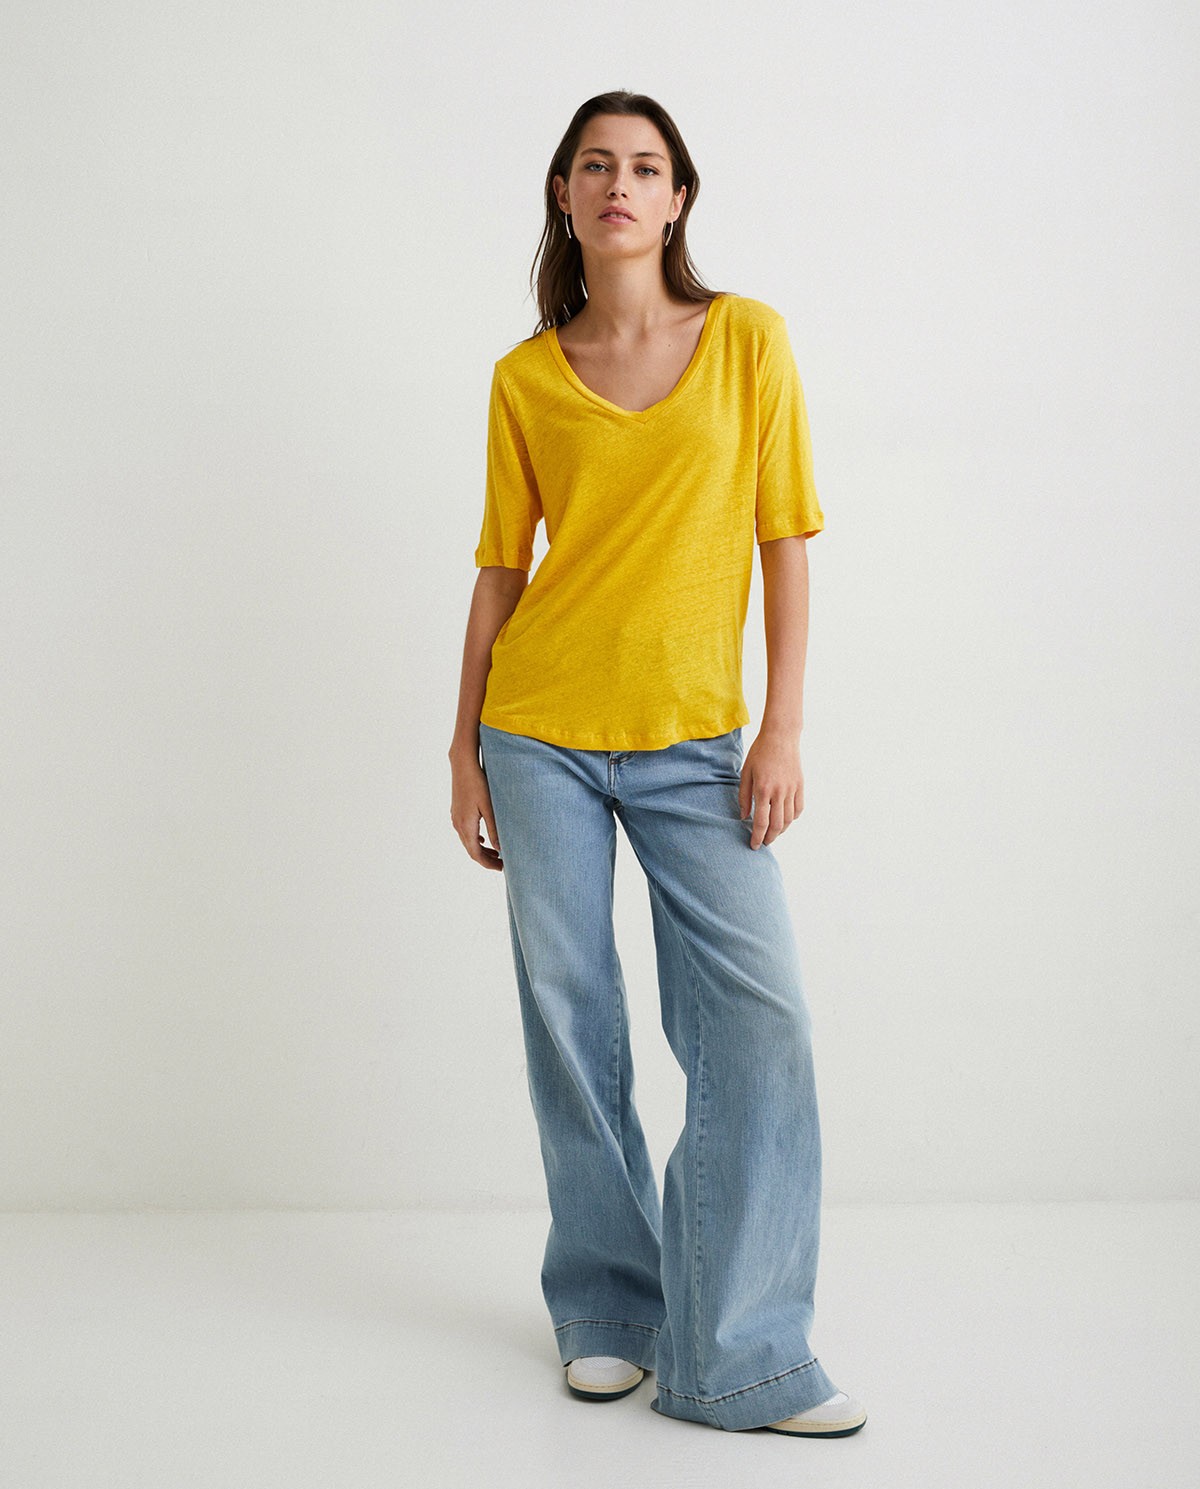 Camiseta 100% lino Amarillo